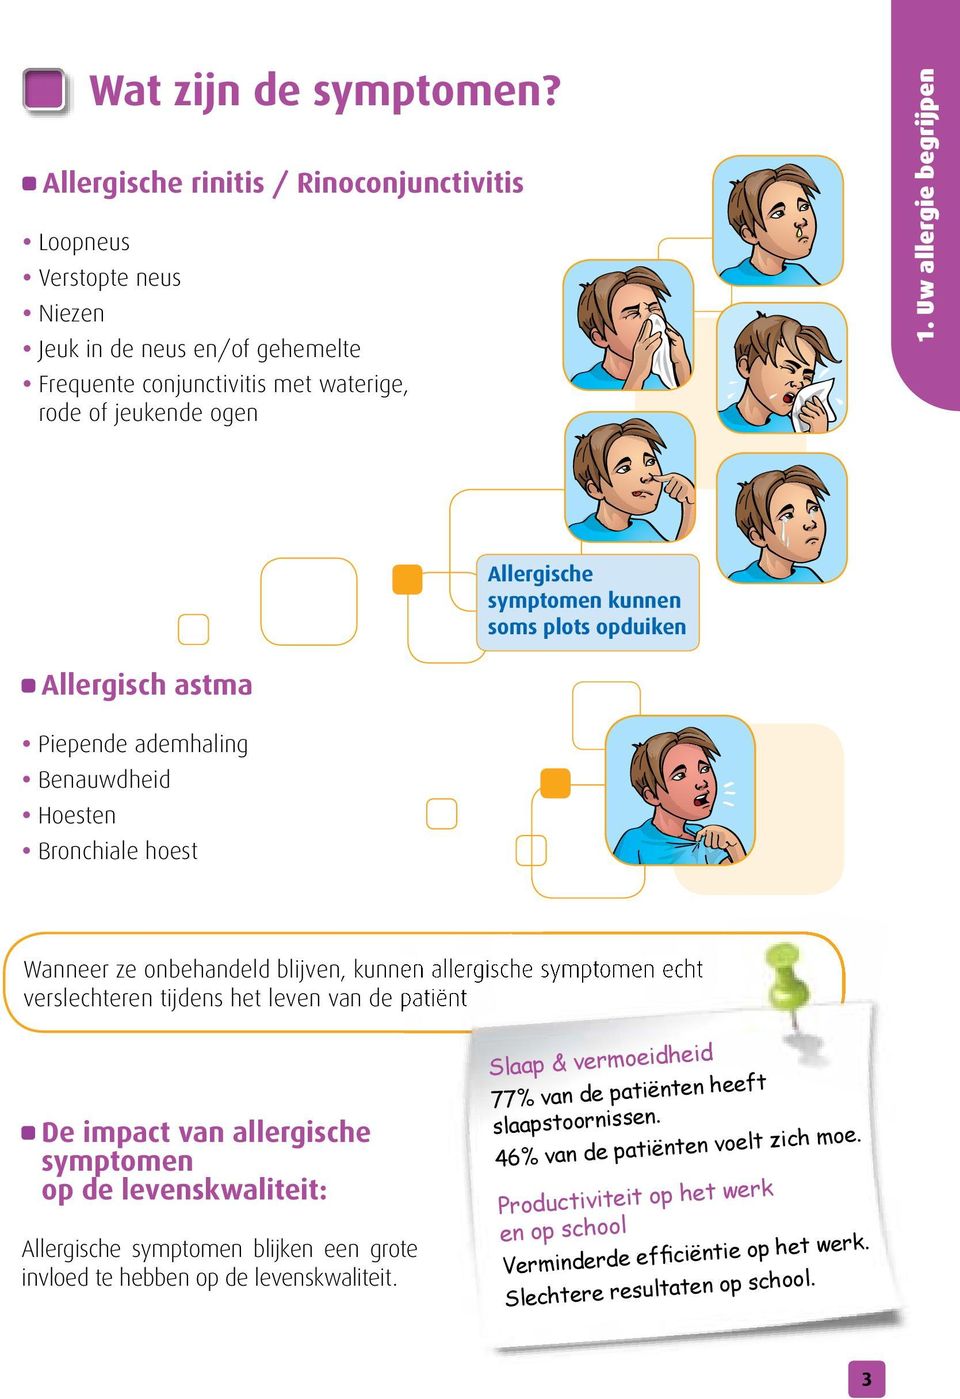 symptomen echt verslechteren tijdens het leven van de patiënt De impact van allergische symptomen op de levenskwaliteit: Allergische symptomen blijken een grote invloed te hebben op de